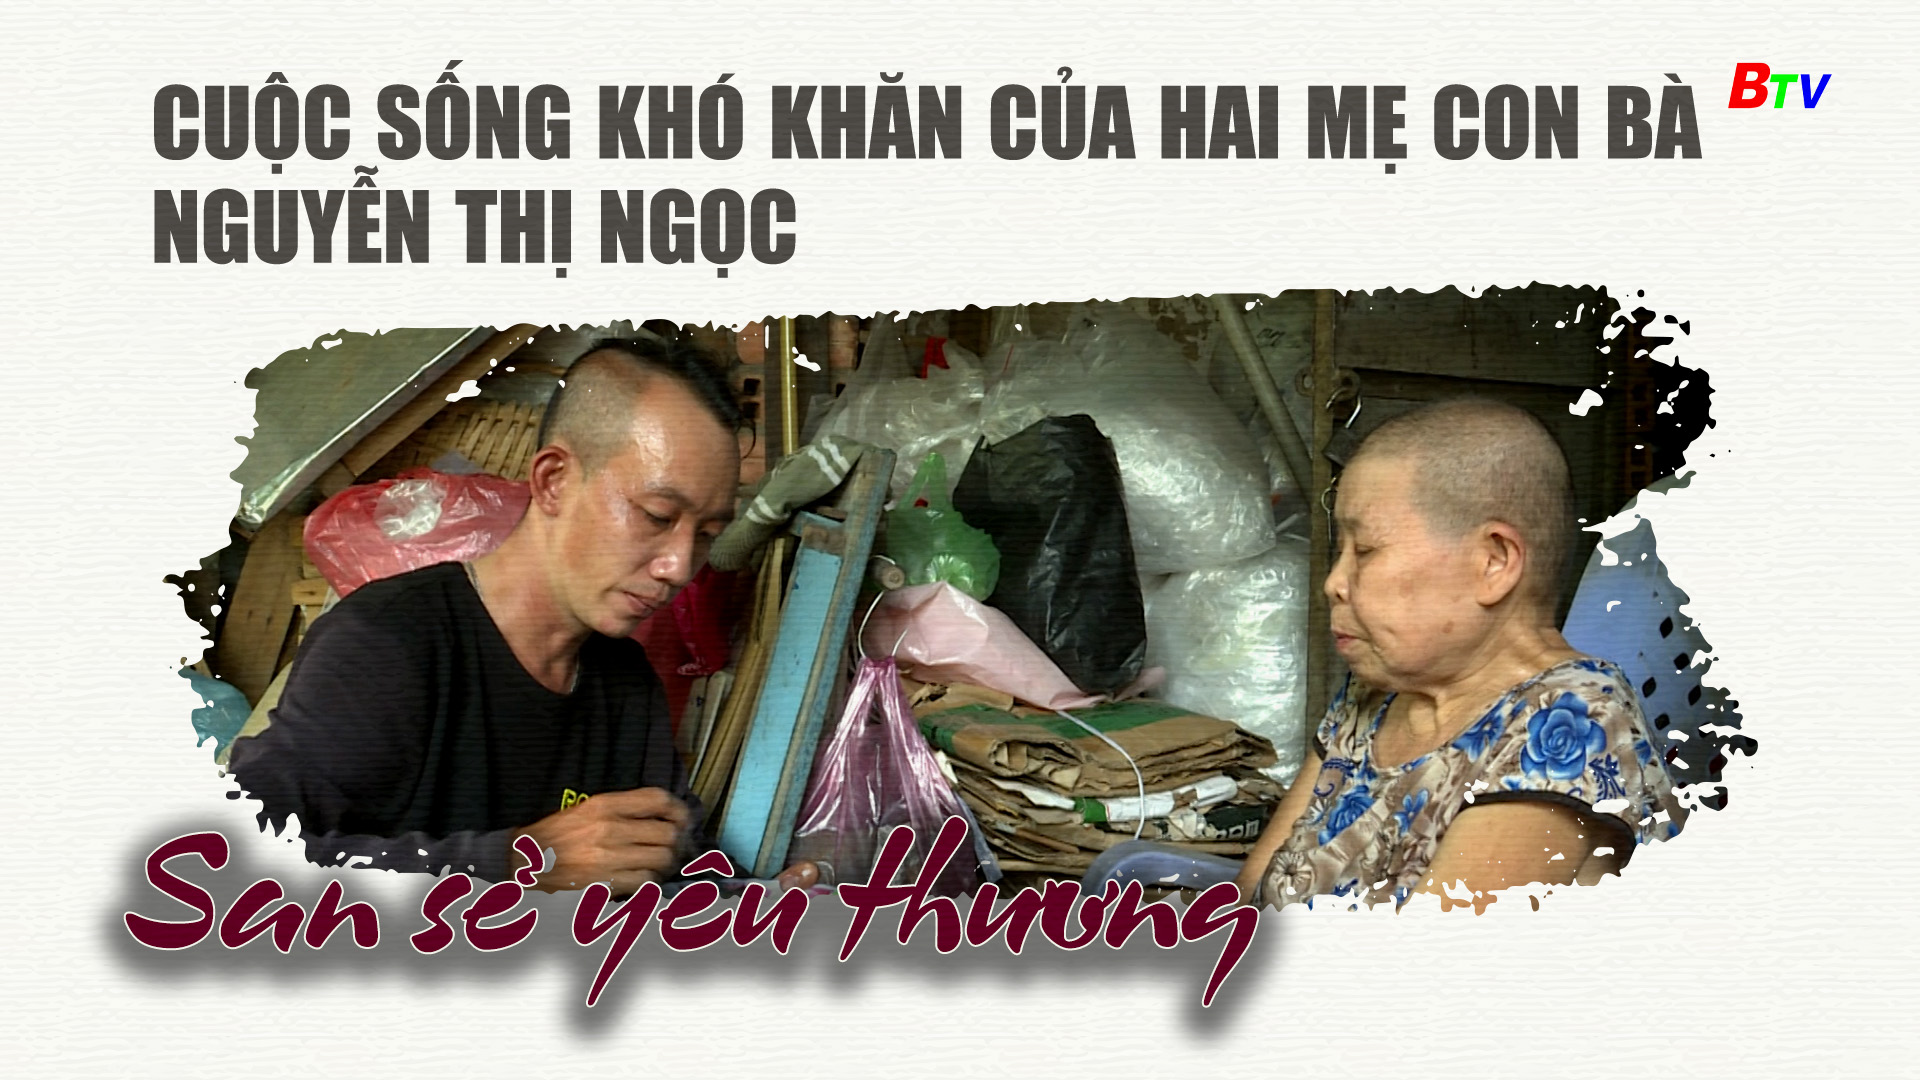 Cuộc sống khó khăn của hai mẹ con bà Nguyễn Thị Ngọc